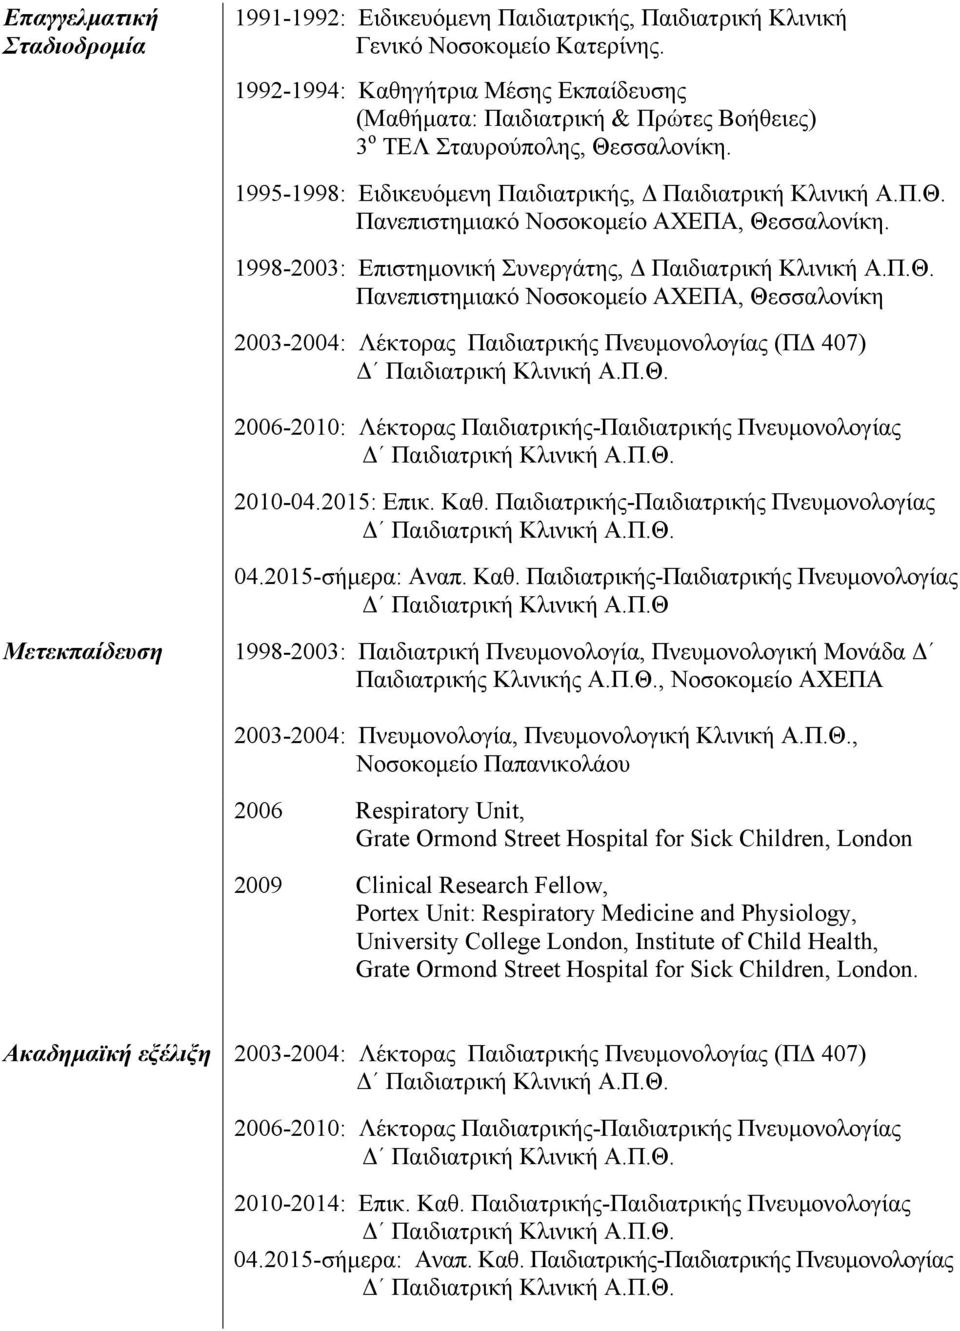 1998-2003: Επιστημονική Συνεργάτης, Δ Παιδιατρική Κλινική Α.Π.Θ.